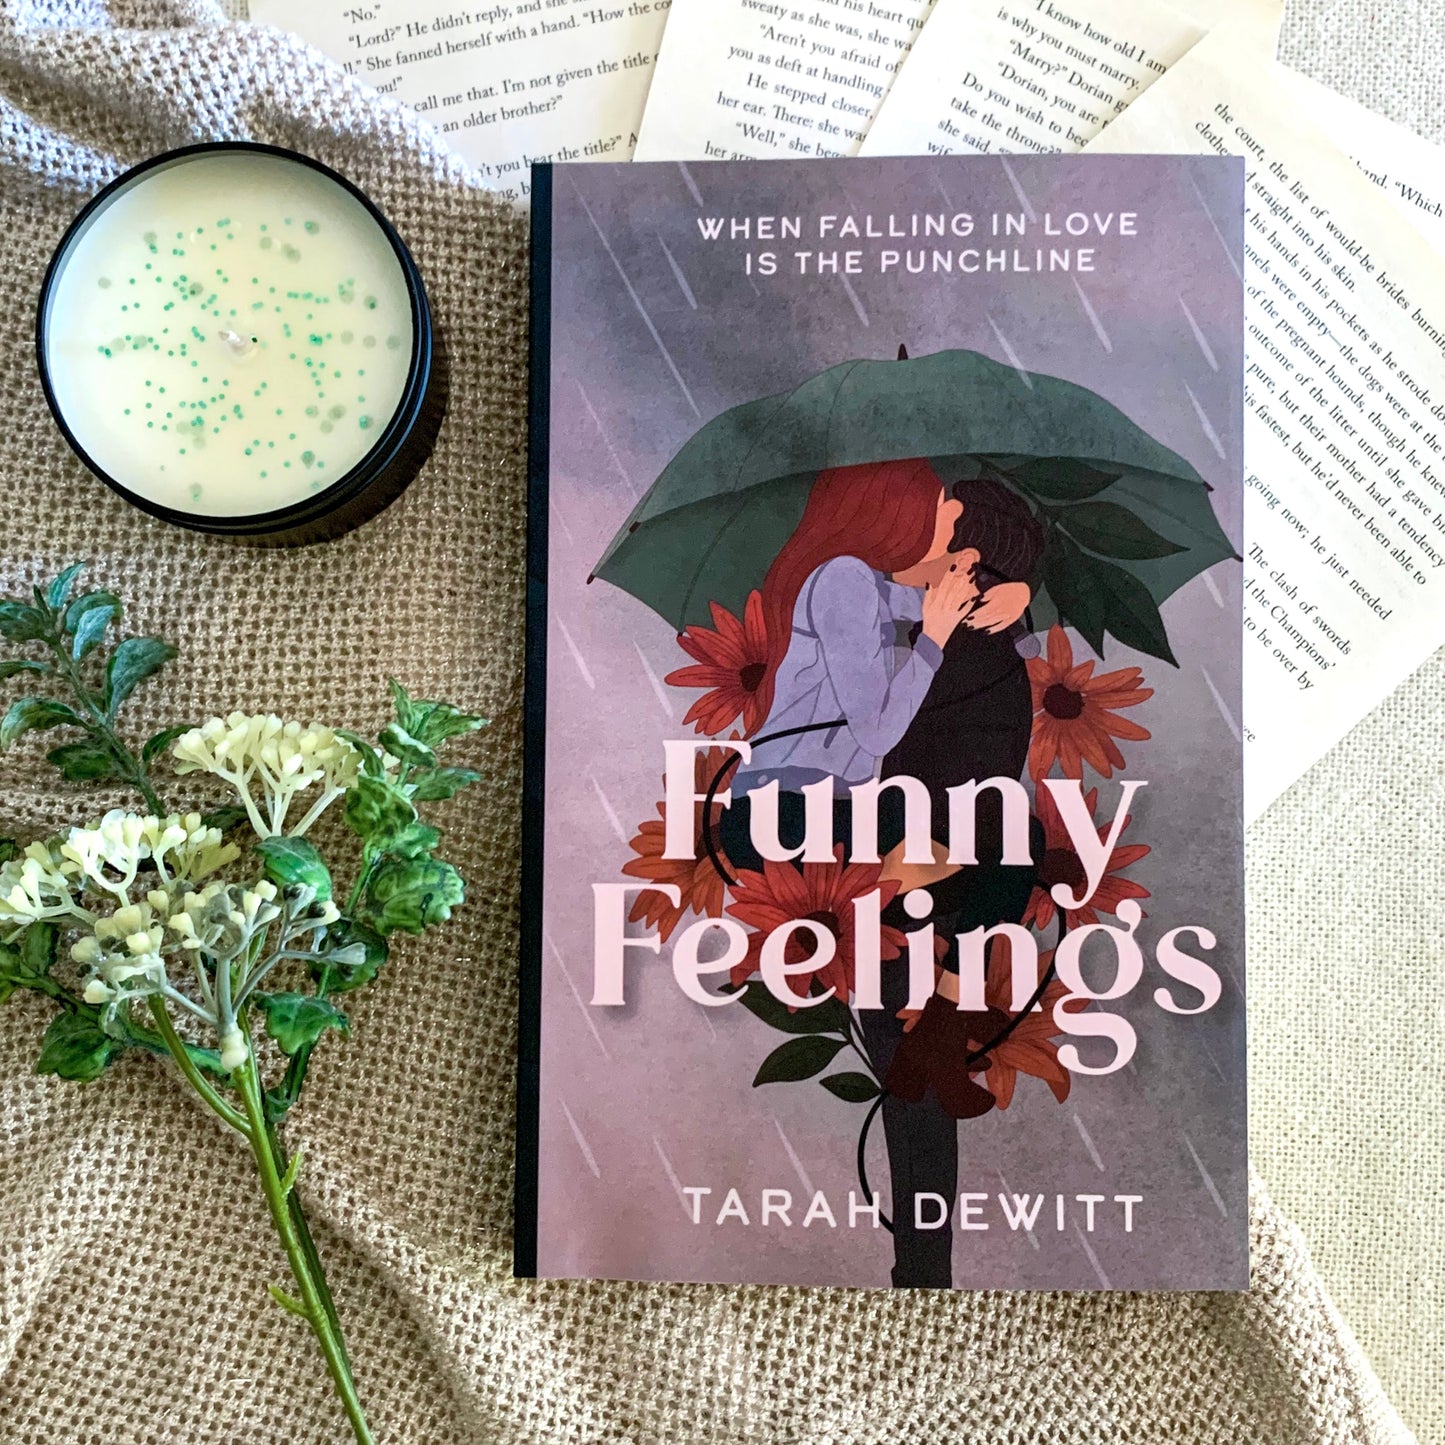 Funny Feelings by Tarah DeWitt